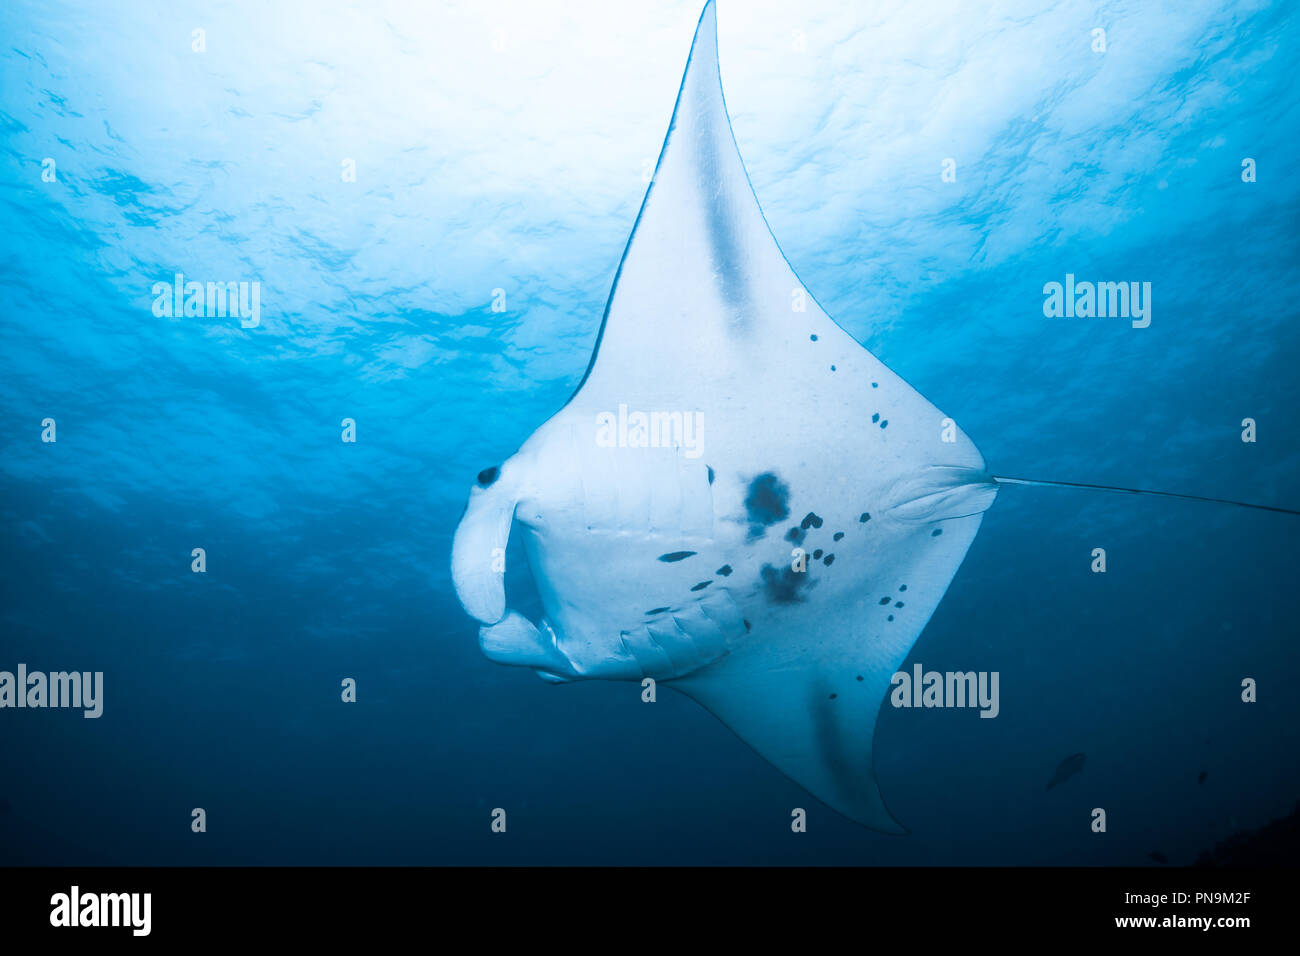 Manta ray. nuotare nell'oceano blu. Isola di Yap Gli Stati Federati di Micronesia Foto Stock